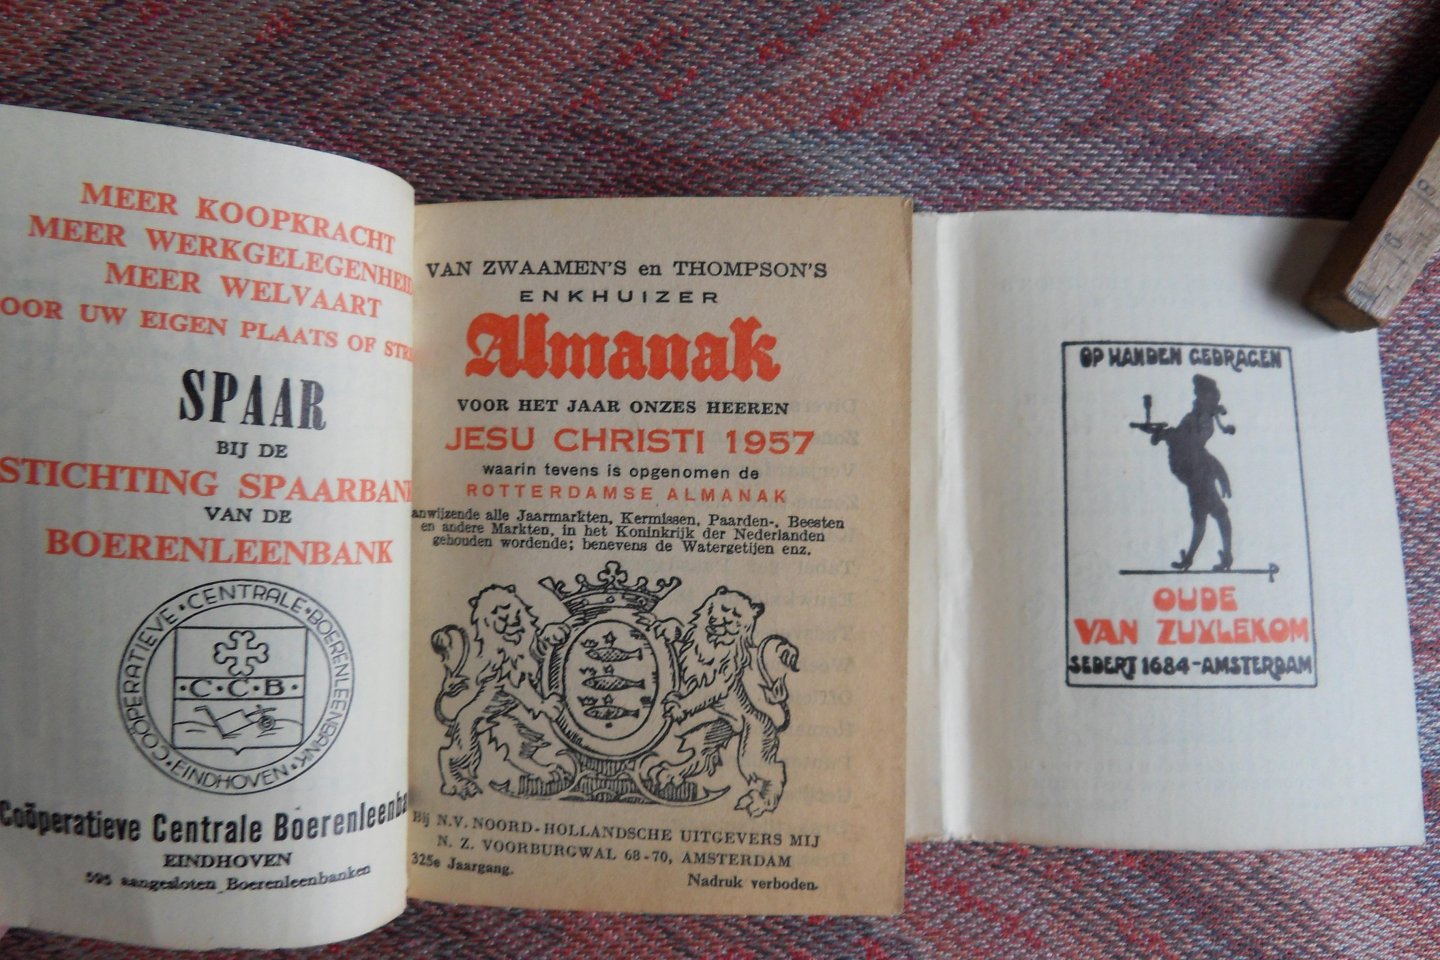 Zwaamen en Thompson. - Van Zwaamen`s en Thompson`s Almanak voor het Jaar Onzes Heeren Jesu Christi 1957, waarin tevens is opgenomen de Rotterdamse Almanak. [ 325e Jaargang ].